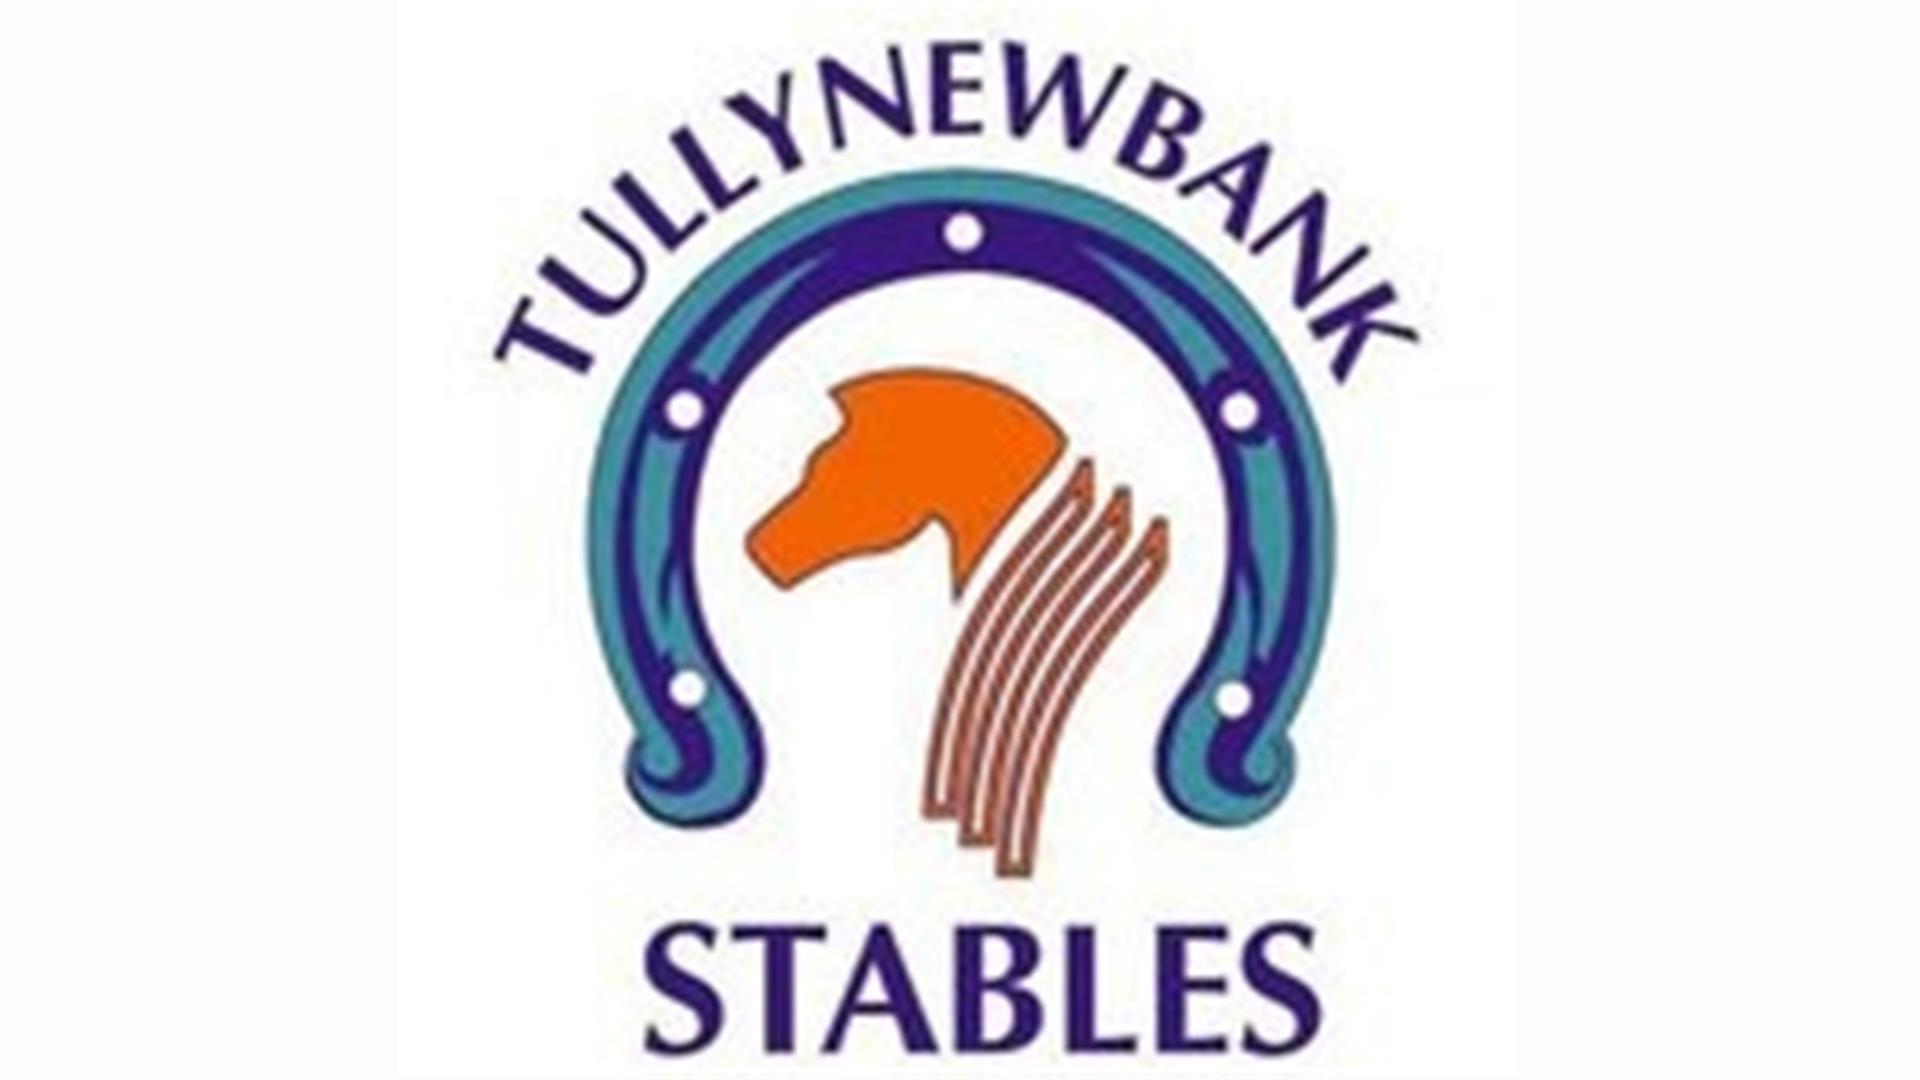 Tullynewbank Stables